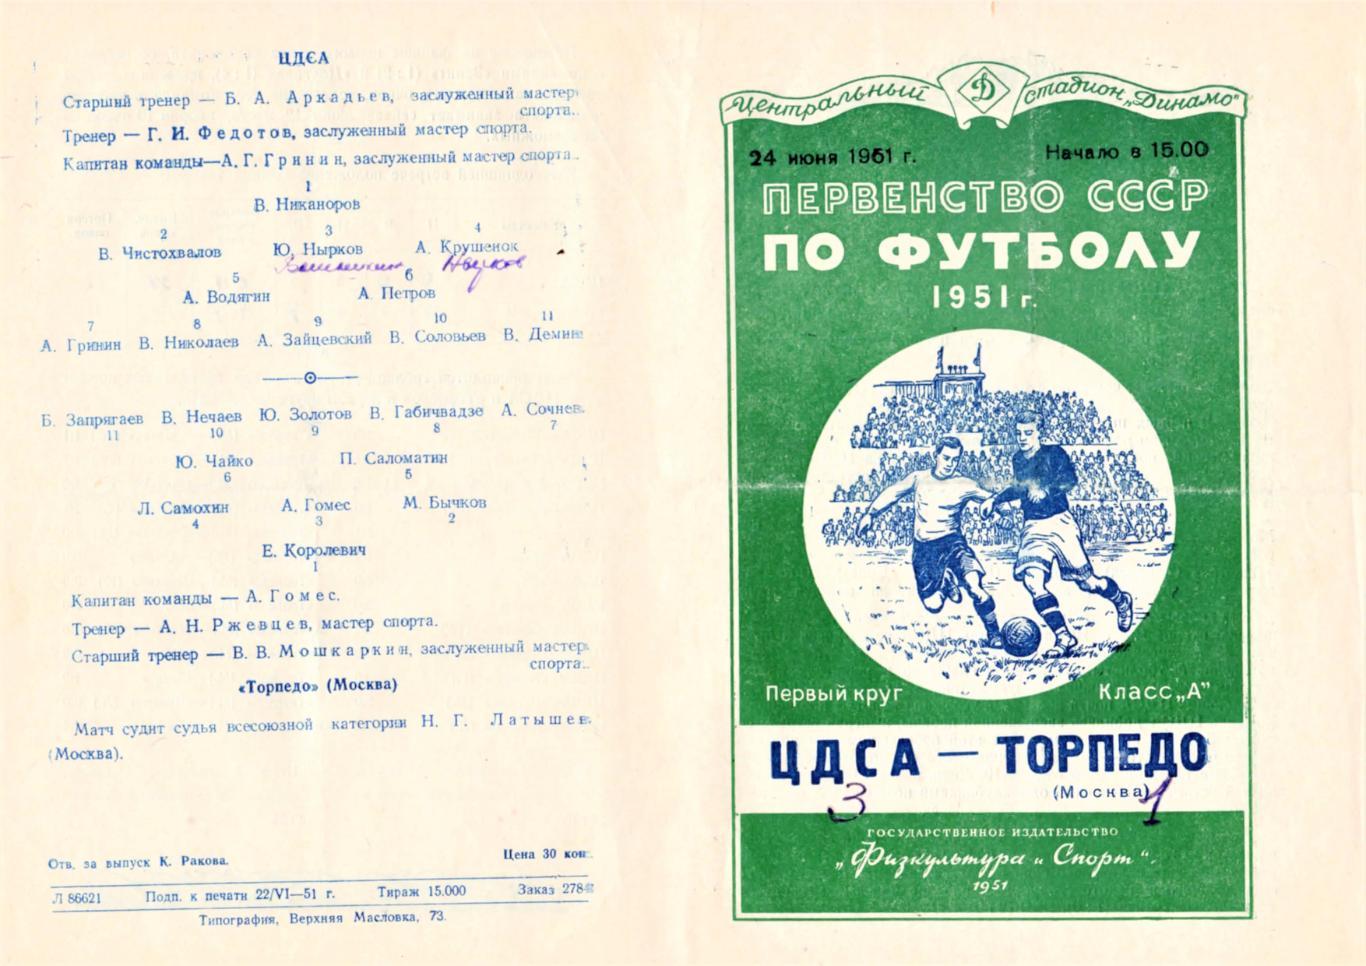 24.06.1951. ЦДСА (Москва) - Торпедо (Москва) - копия